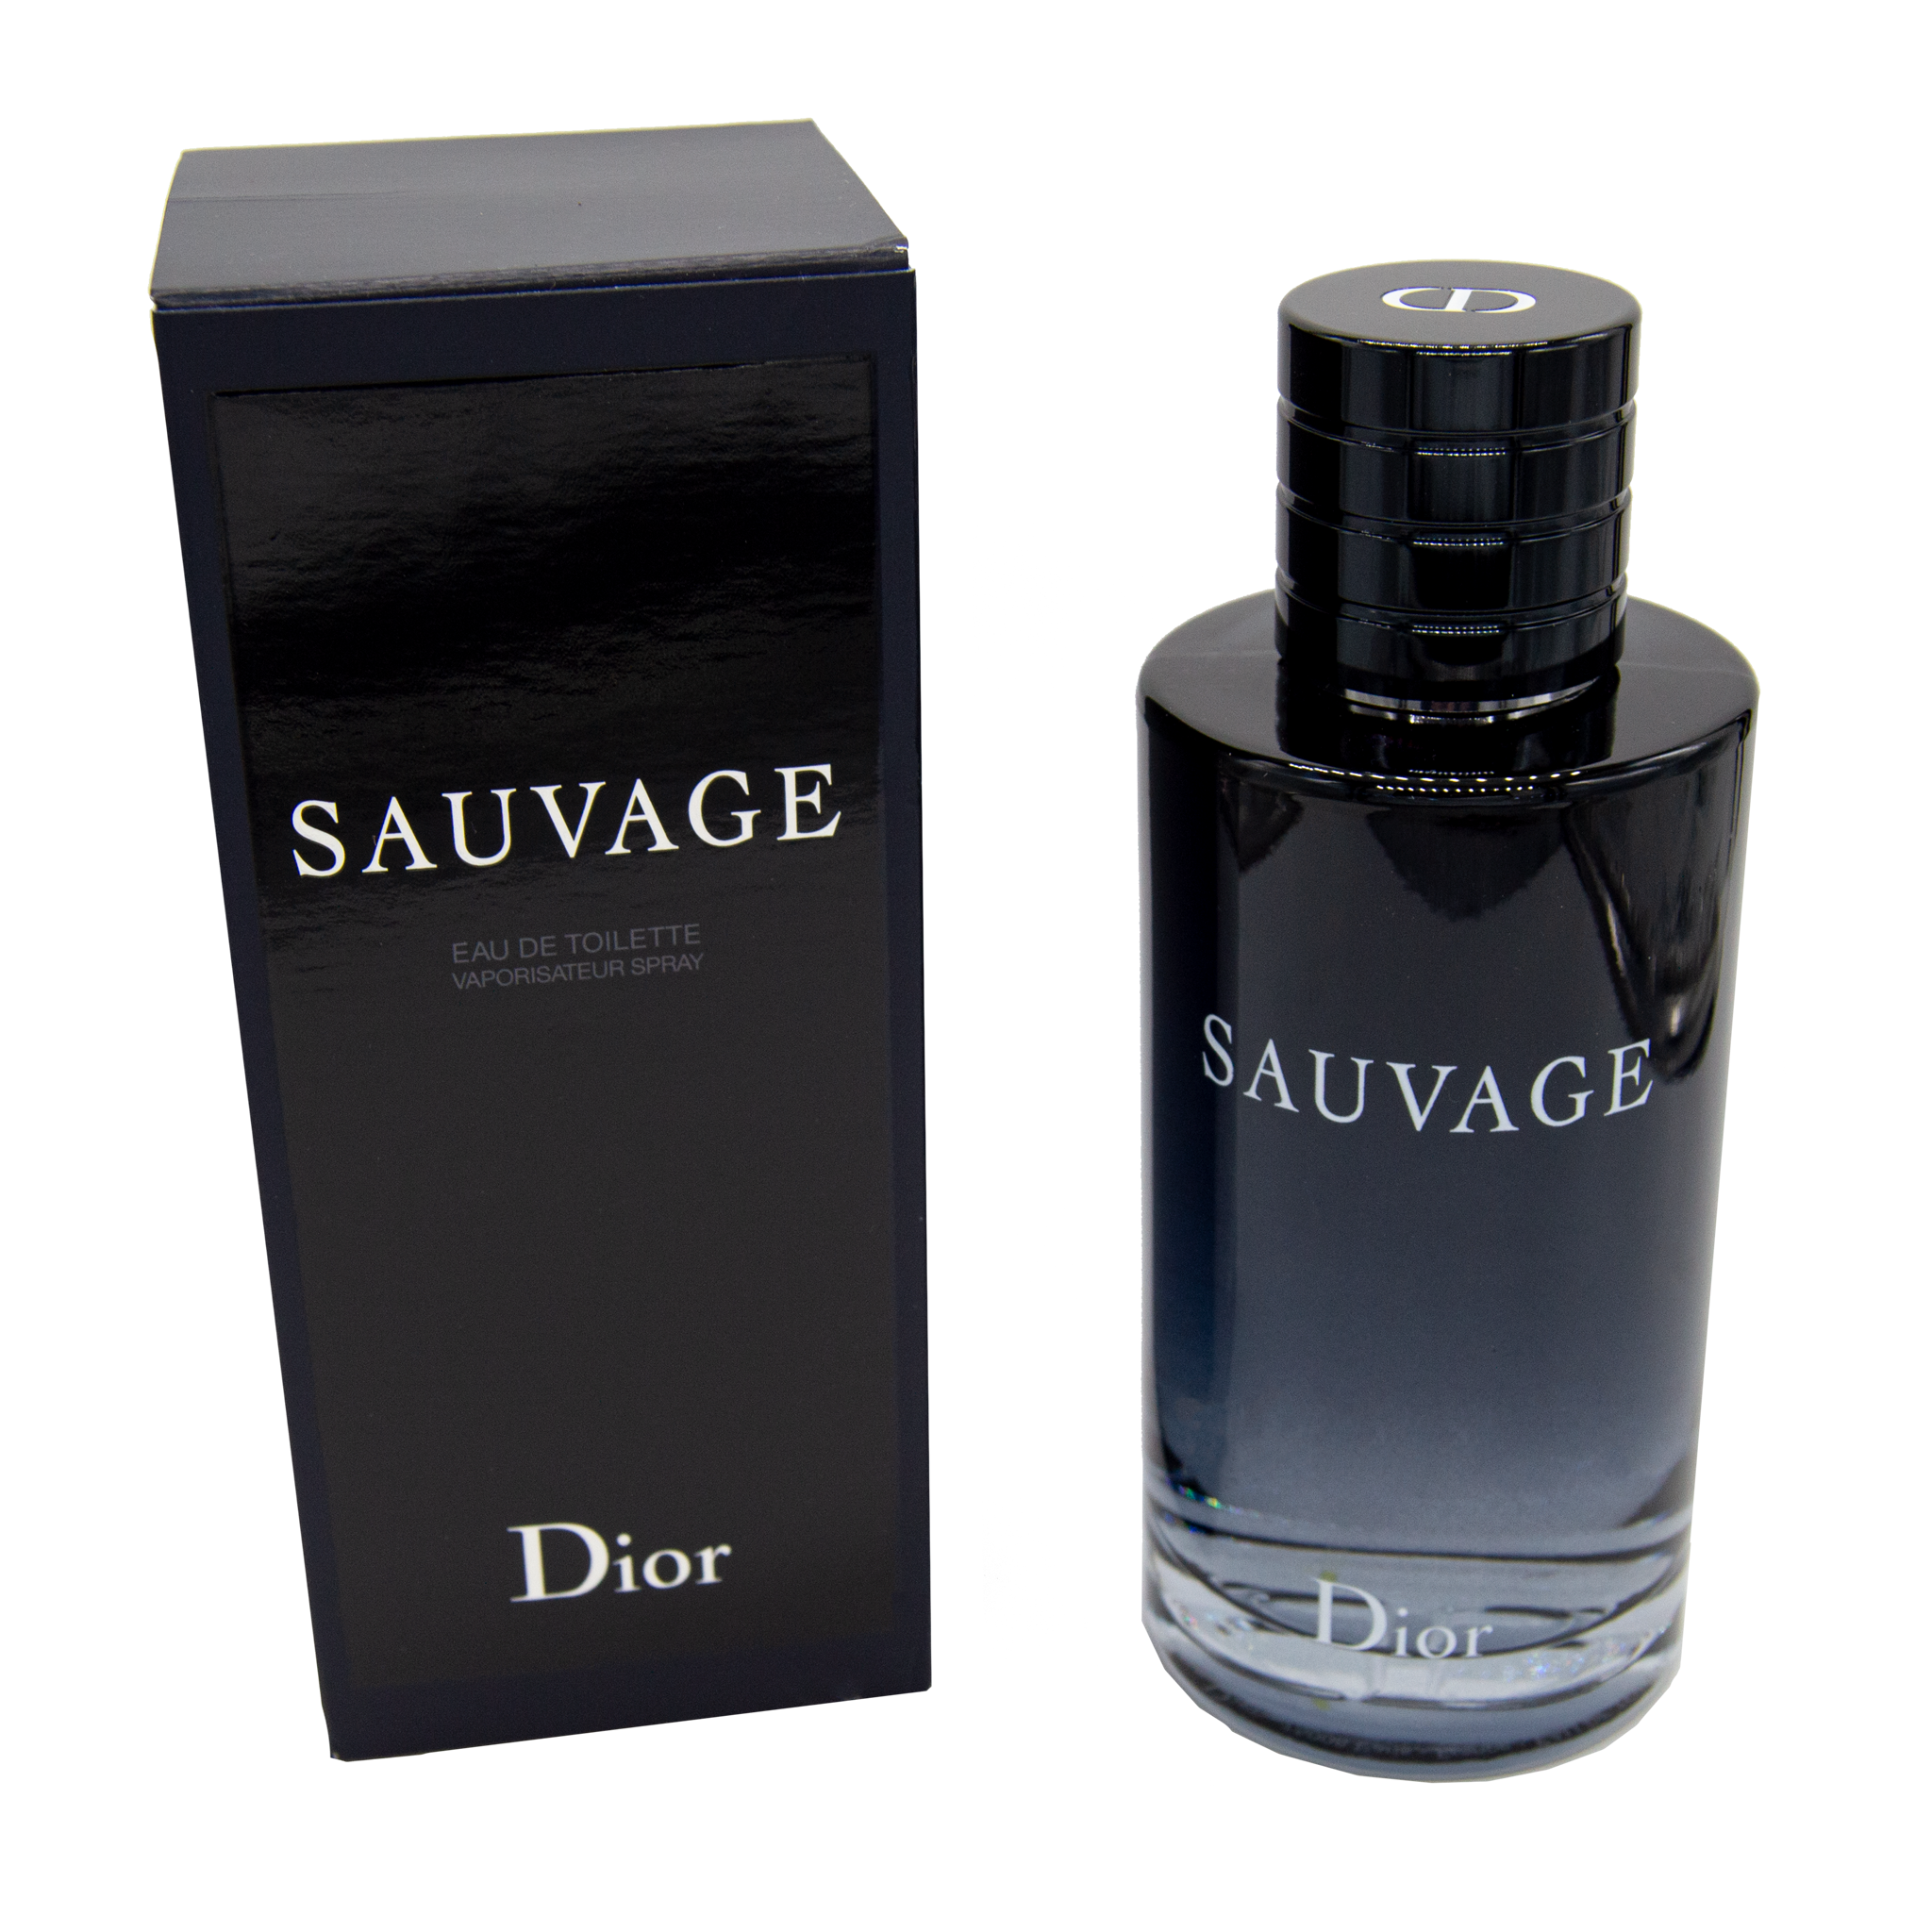 Dior Sauvage Eau de Toilette, 6.7 oz.